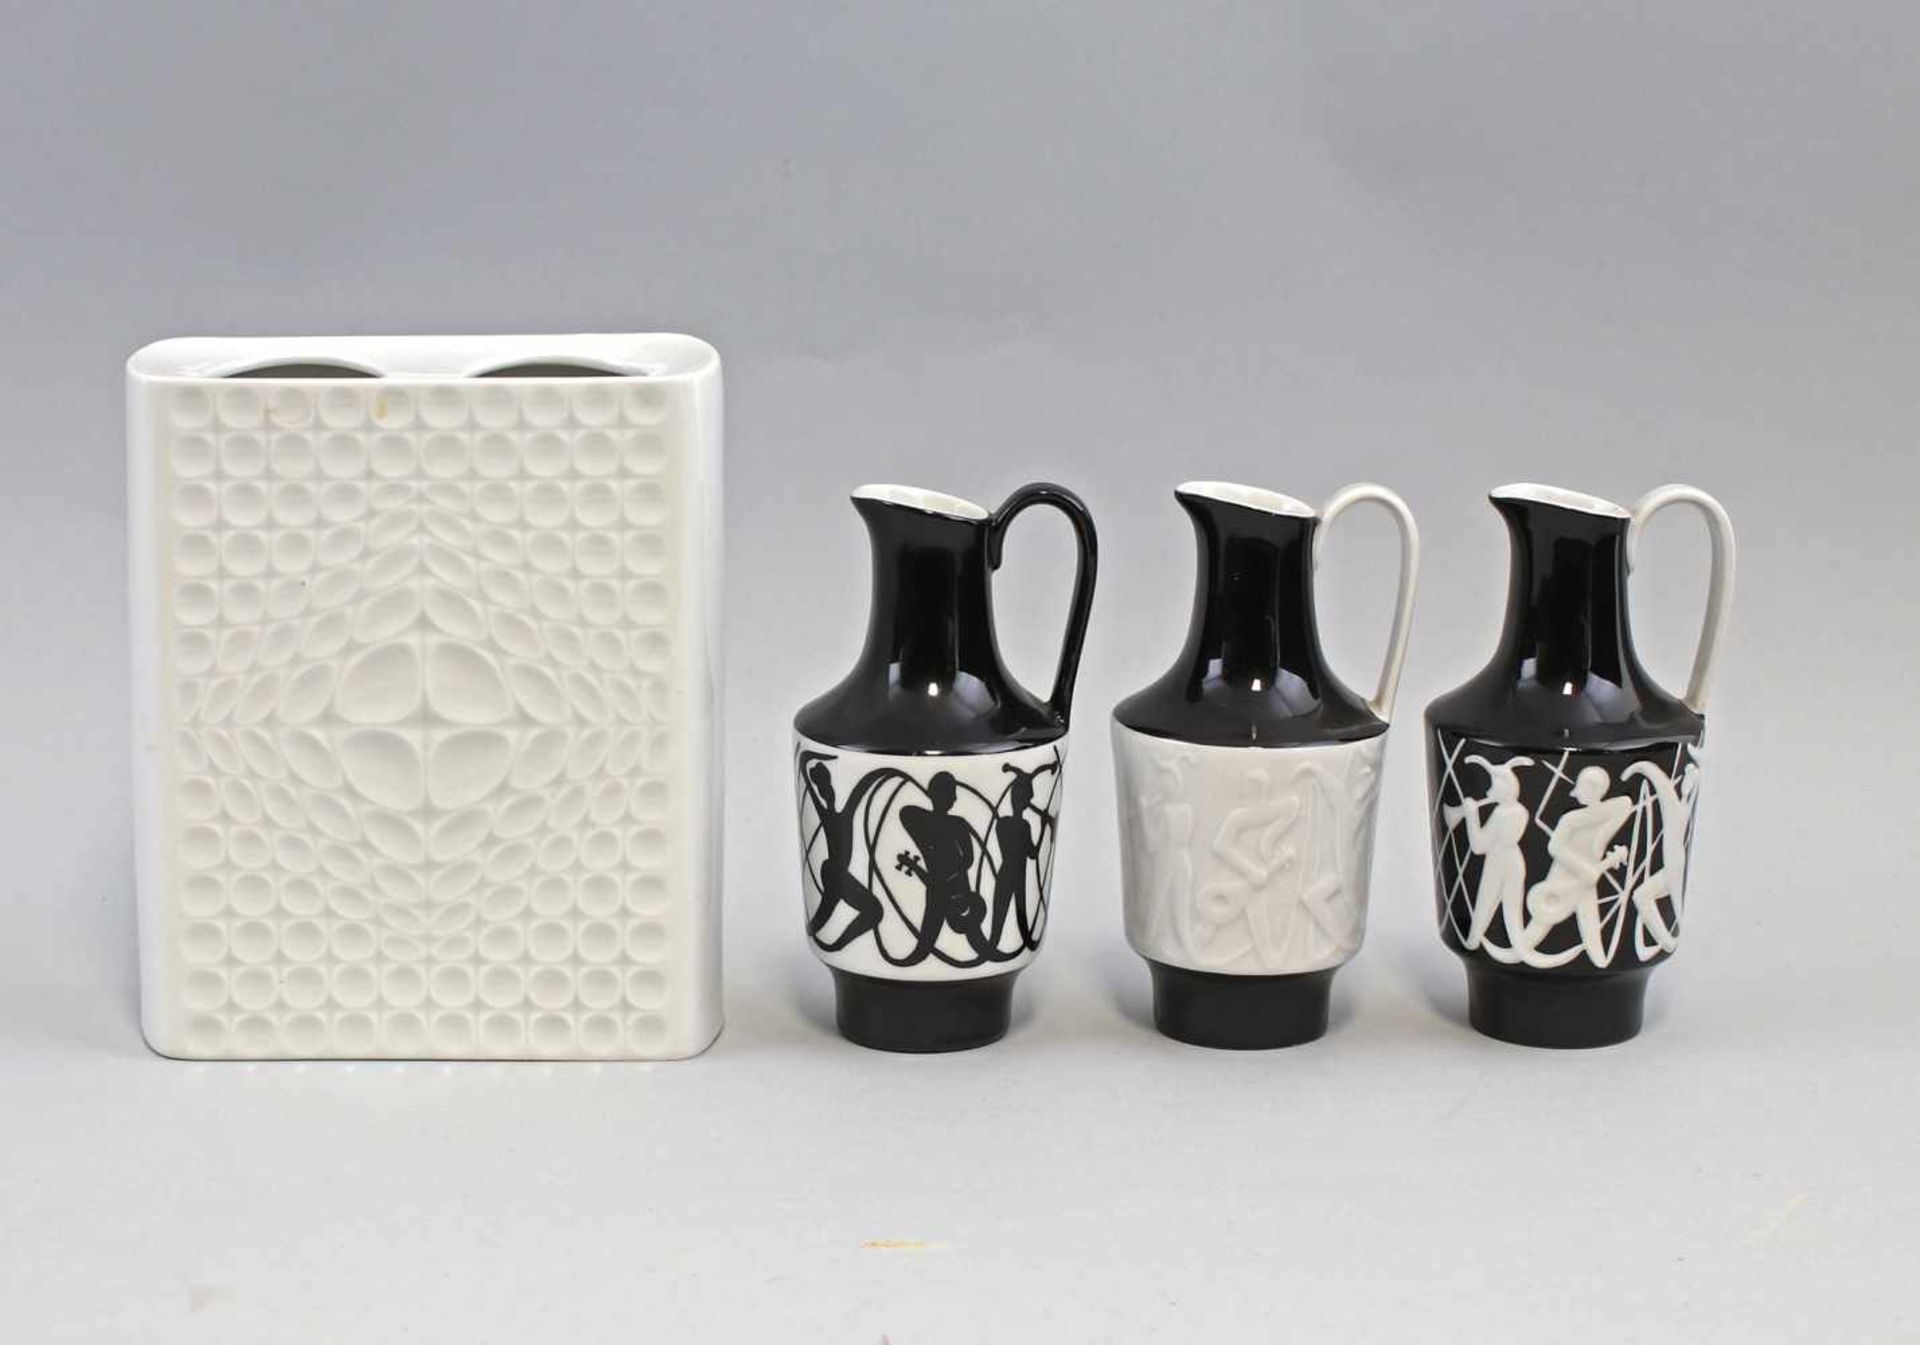 4 Vasen 60/70er Jahre Designdabei weiße Vase gemarkt Fürstenberg, 13x6x15cm, 3 Amphorenkännchen